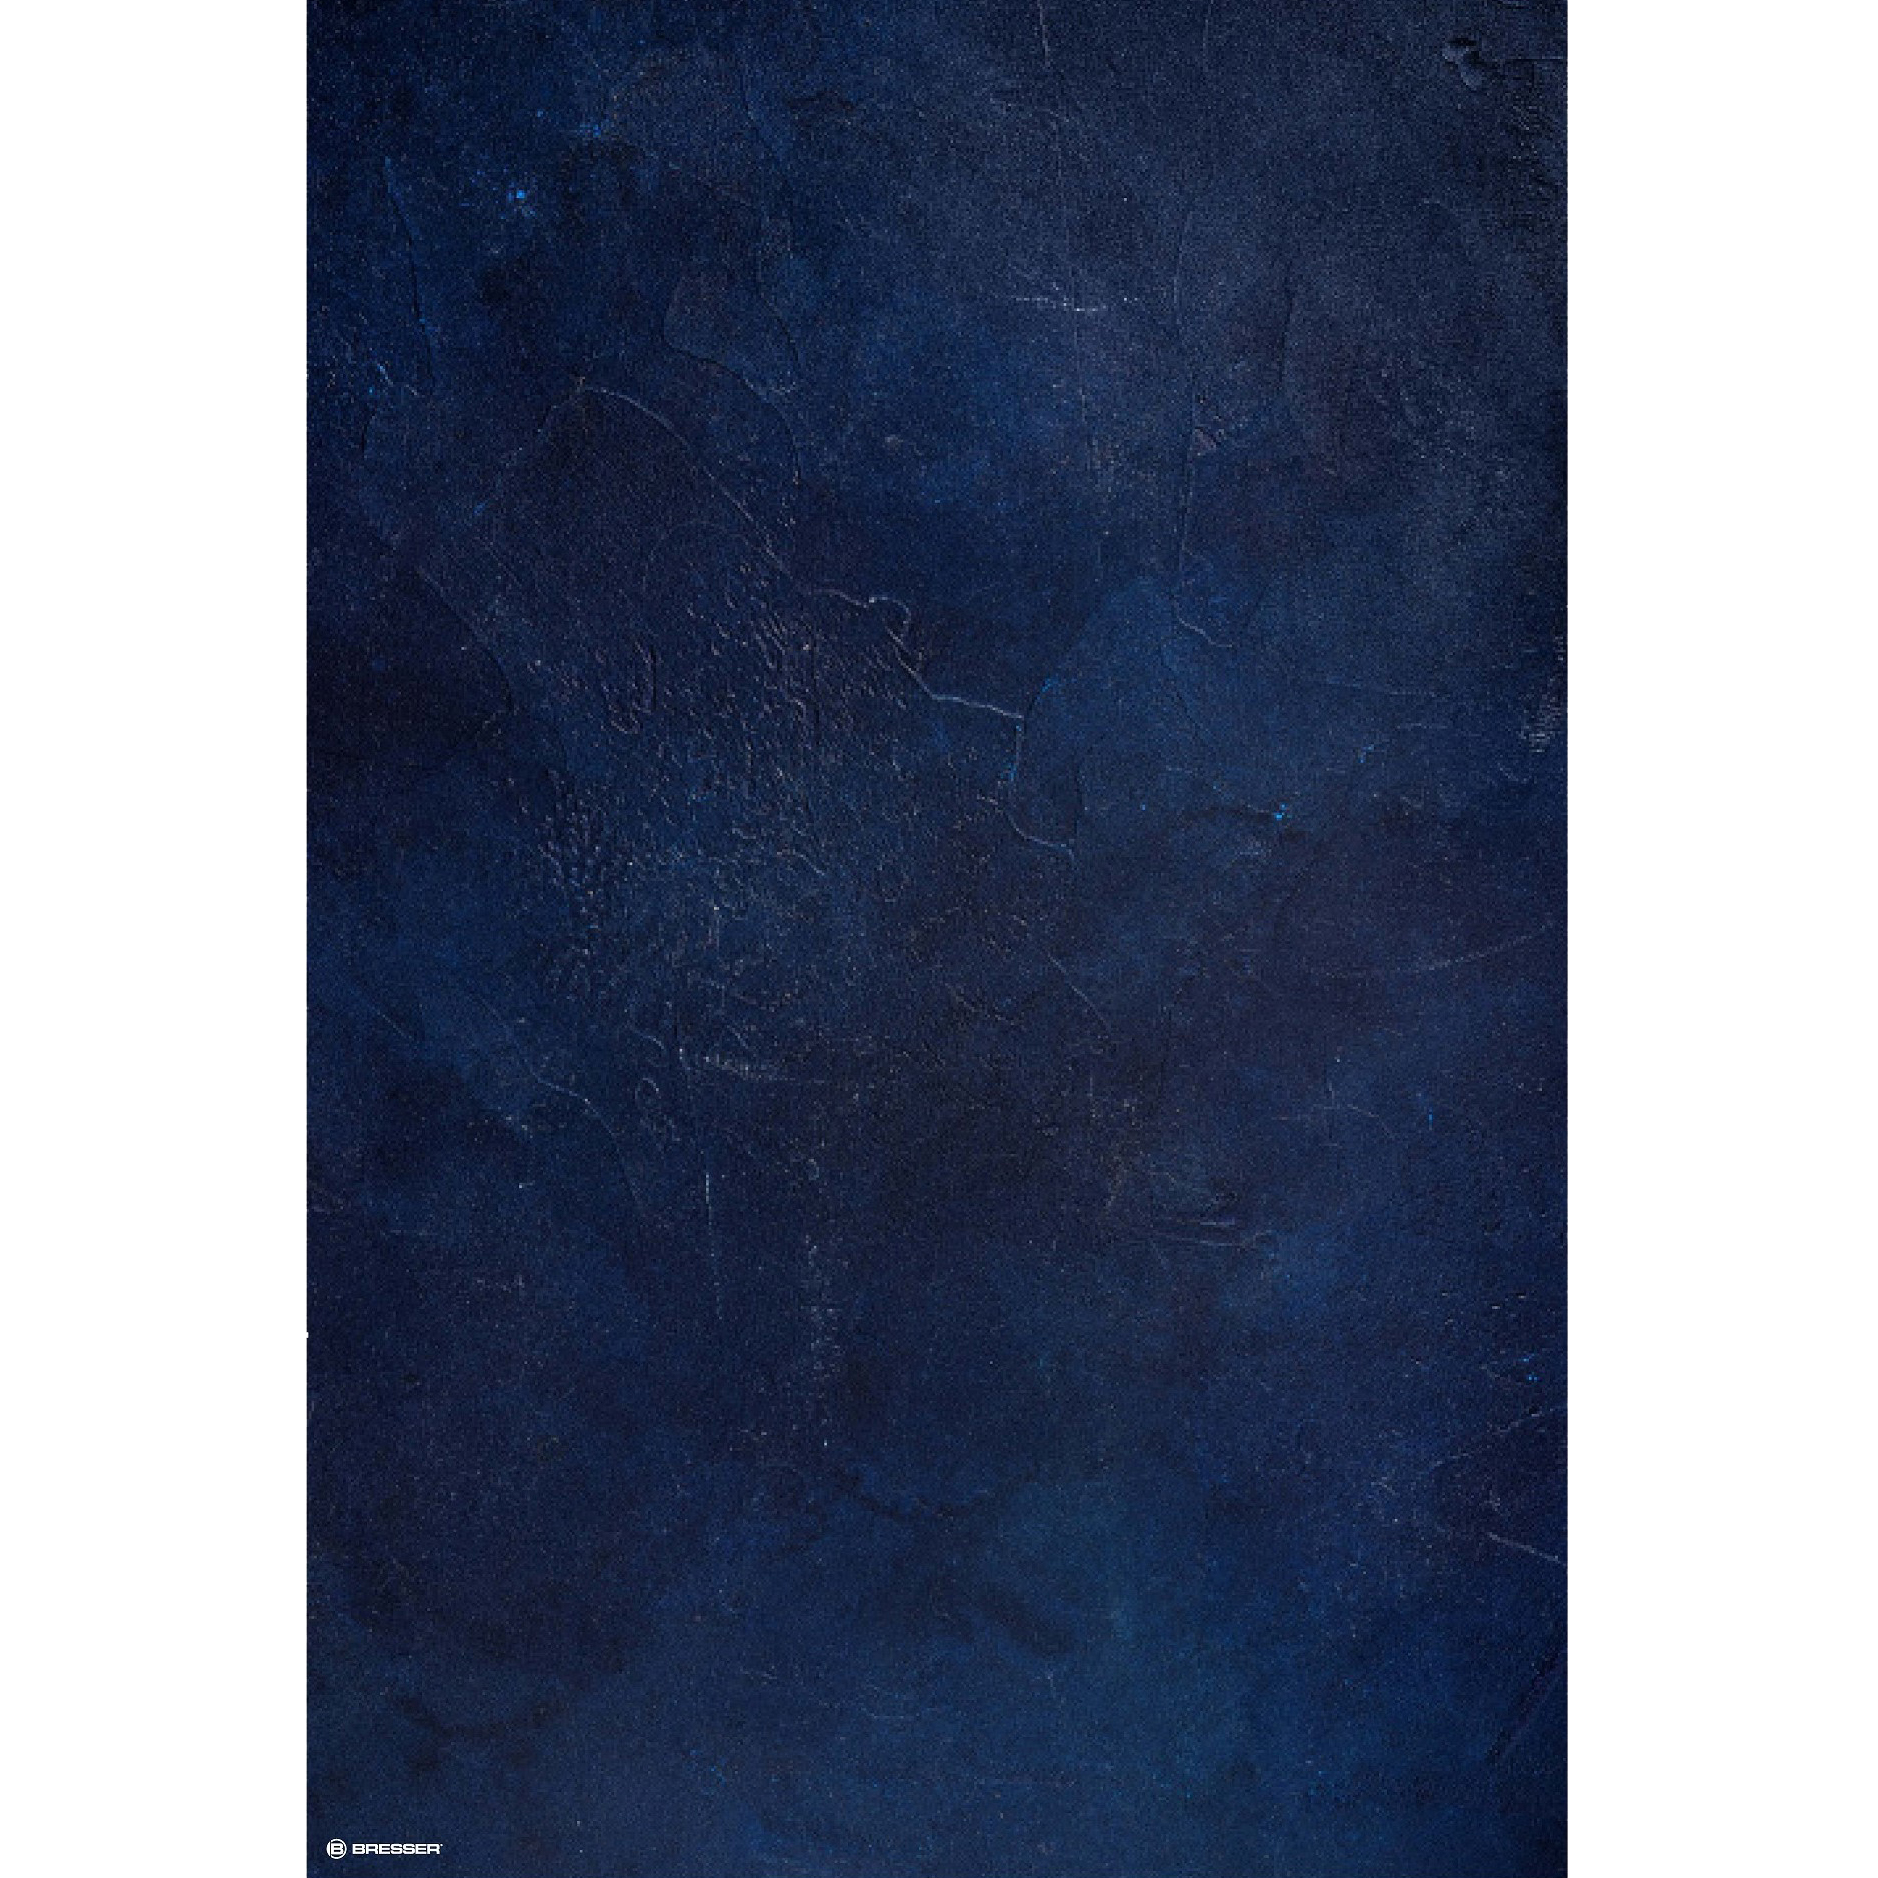 Fondo de Tela BRESSER con Estampado fotográfico 80 x 120 cm - Jeans Blue